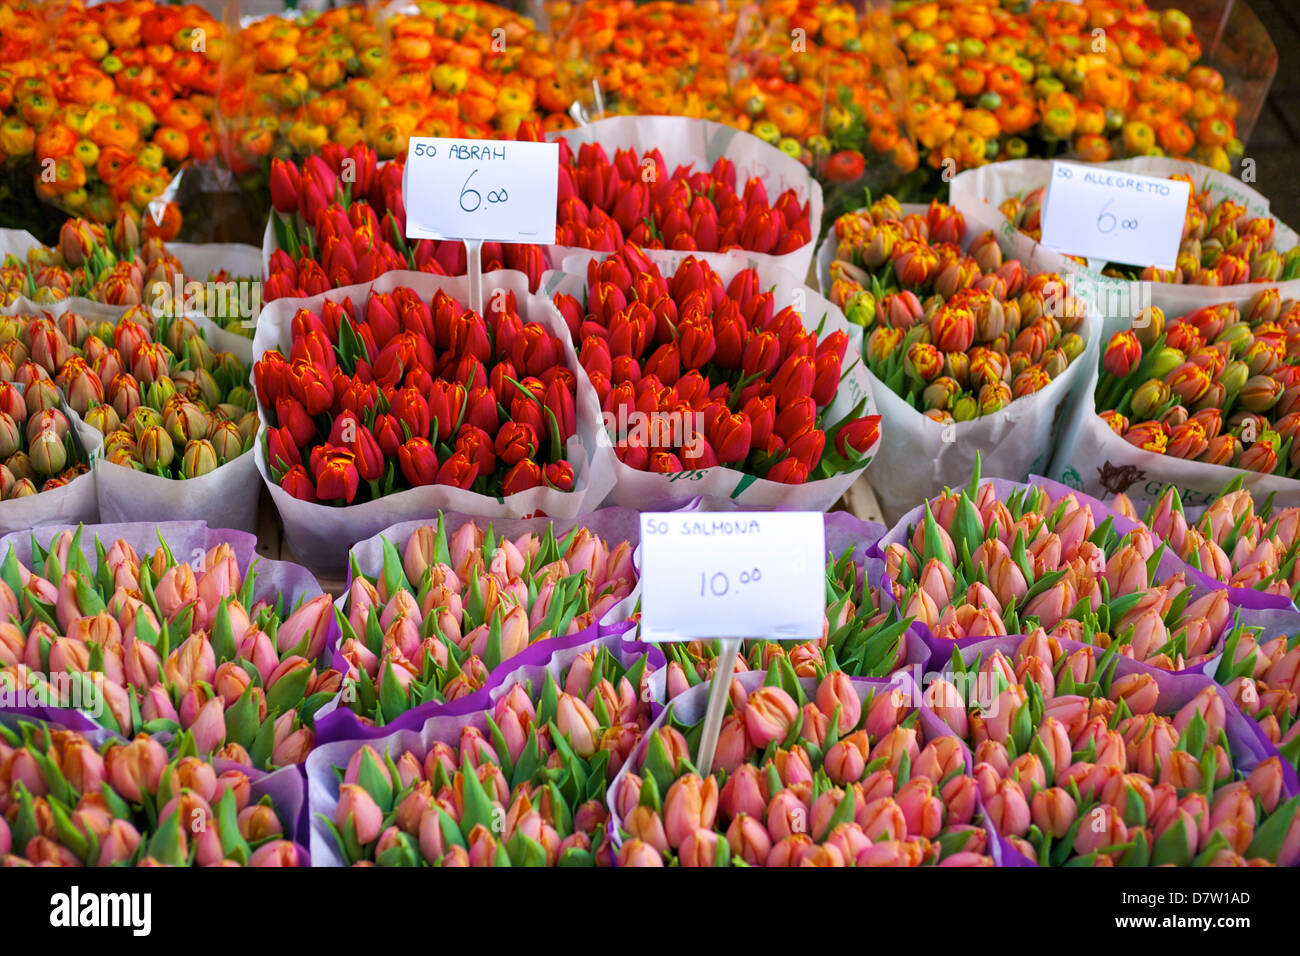 flower stock market amsterdam